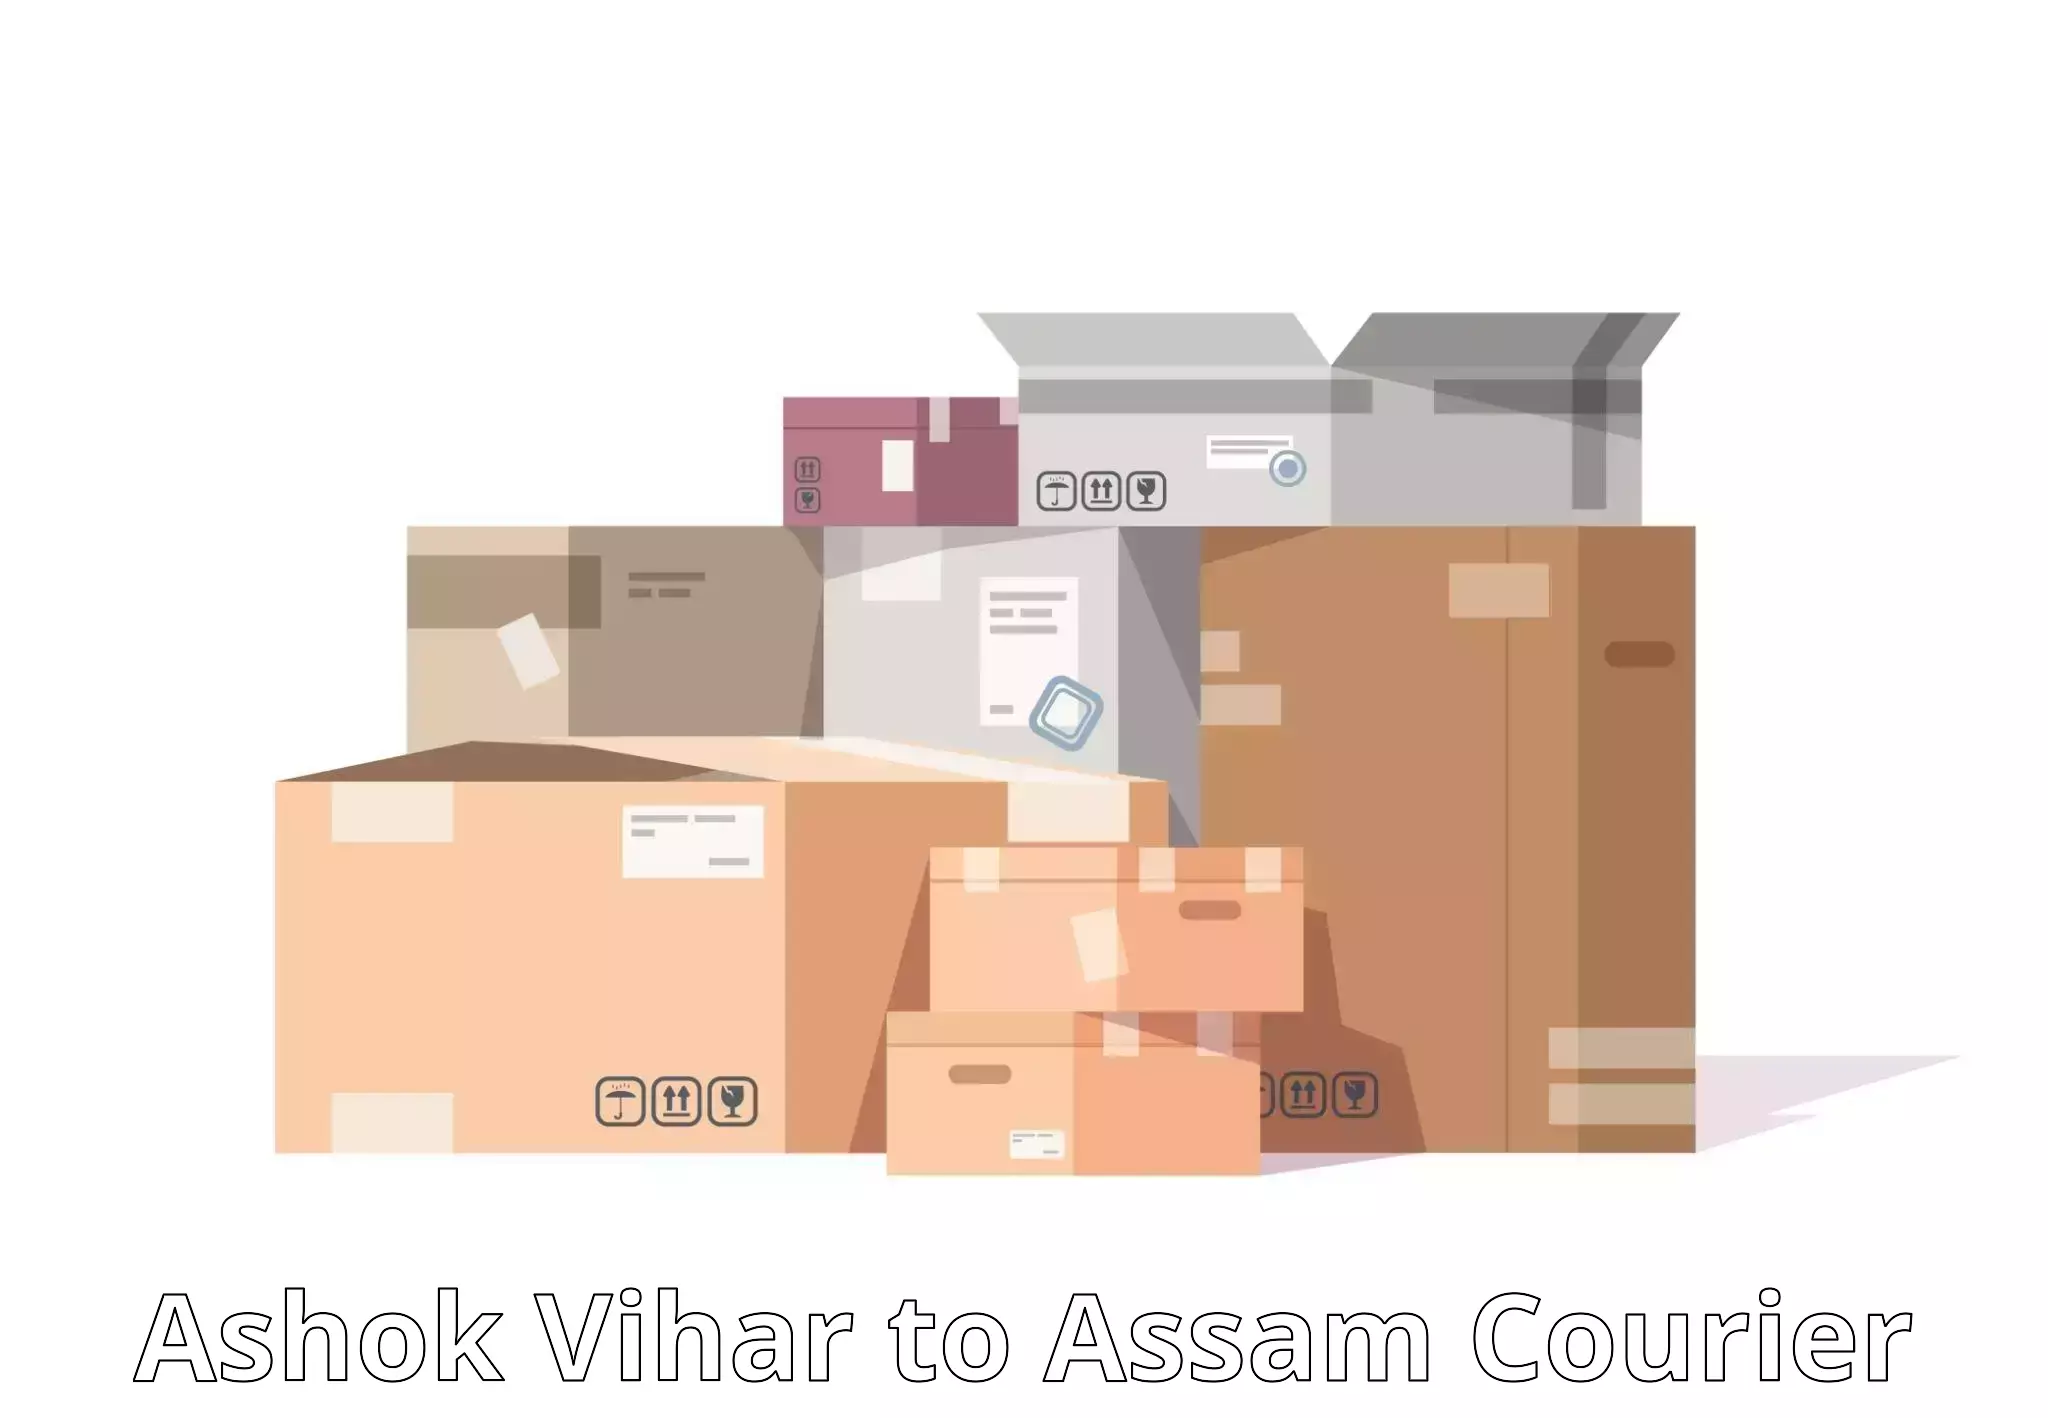 Sustainable delivery practices Ashok Vihar to Tinsukia